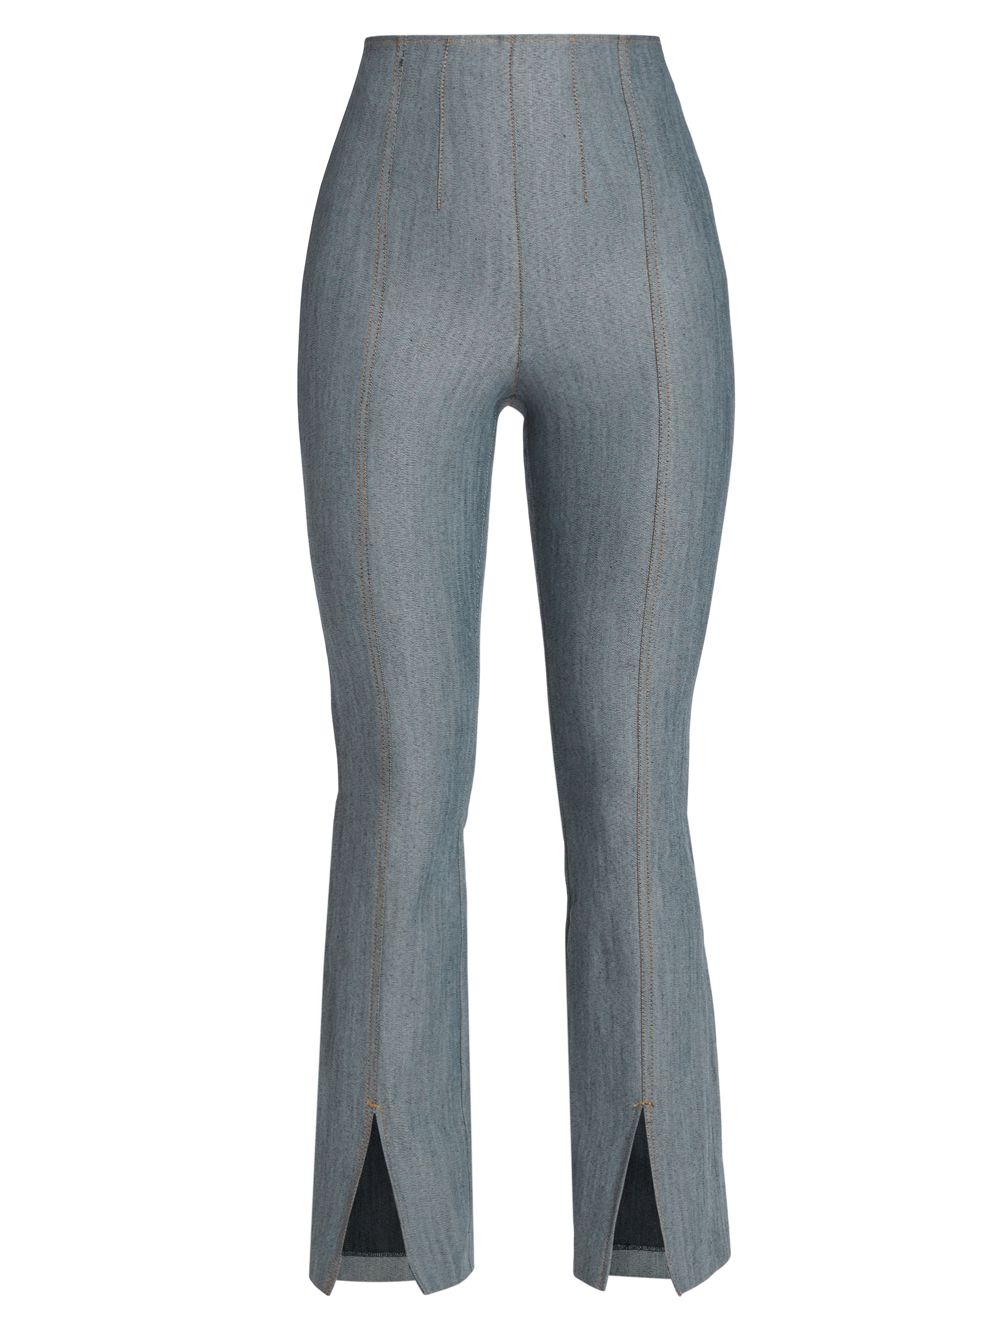 Эластичные расклешенные укороченные джинсы Laurie с высокой посадкой Cinq à Sept, индиго джинсы francine с высокой посадкой цвета индиго cinq à sept цвет blue